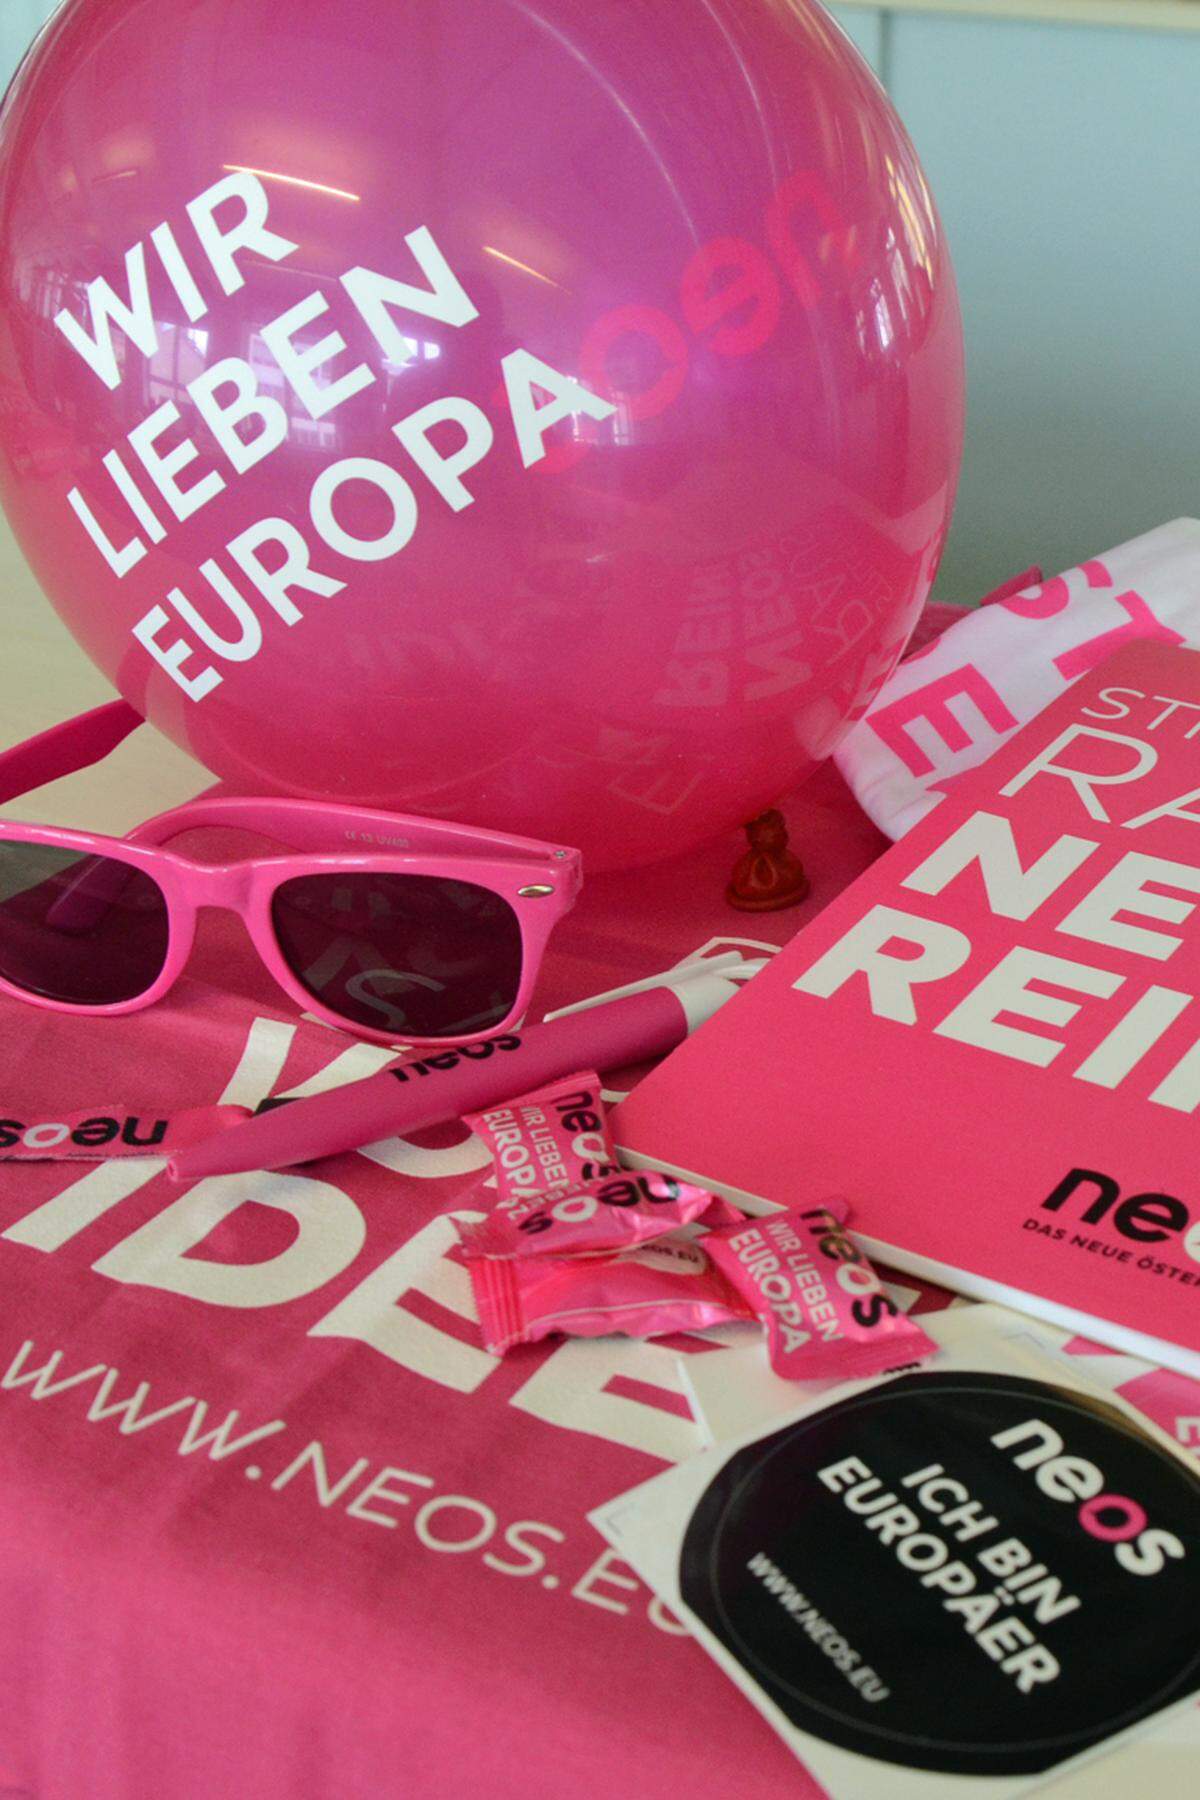 "Hot Stuff" verschicken derzeit die Neos. Im Wahlgeschenke-Paket finden sich Luftballone mit der Aufschrift: "Wir lieben Europa." Ähnlich emotional sind die weißen T-Shirts mit dem rosa-schwarzen Statement: "Ist in einer Beziehung mit Europa. Neos gefällt das." Den Namen von Spitzenkandidatin Angelika Mlinar kann man auf einem weißen oder pinken Notizblock festhalten. Auch Kugelschreiber, Sticker und die pinke Variante der Grünen-Brille sind in Umlauf. Die rosa Neos-Zuckerl kann man in ein "Sackerl voller Ideen" geben.